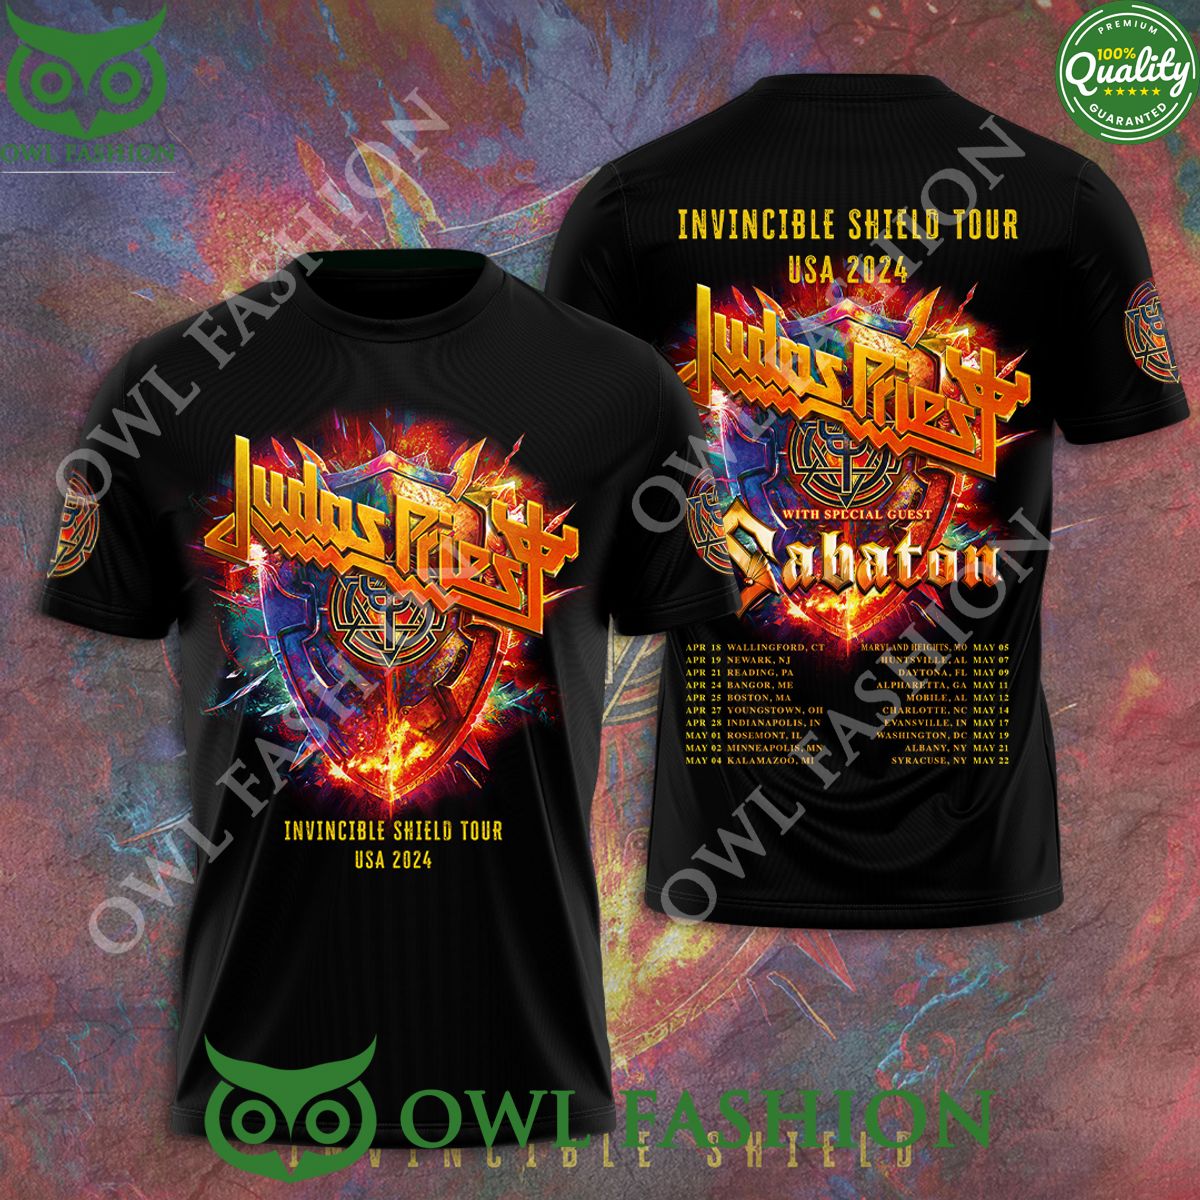 Judas Priest Invincible Shield Tour USA 2024 Schedule 3D T-shirt